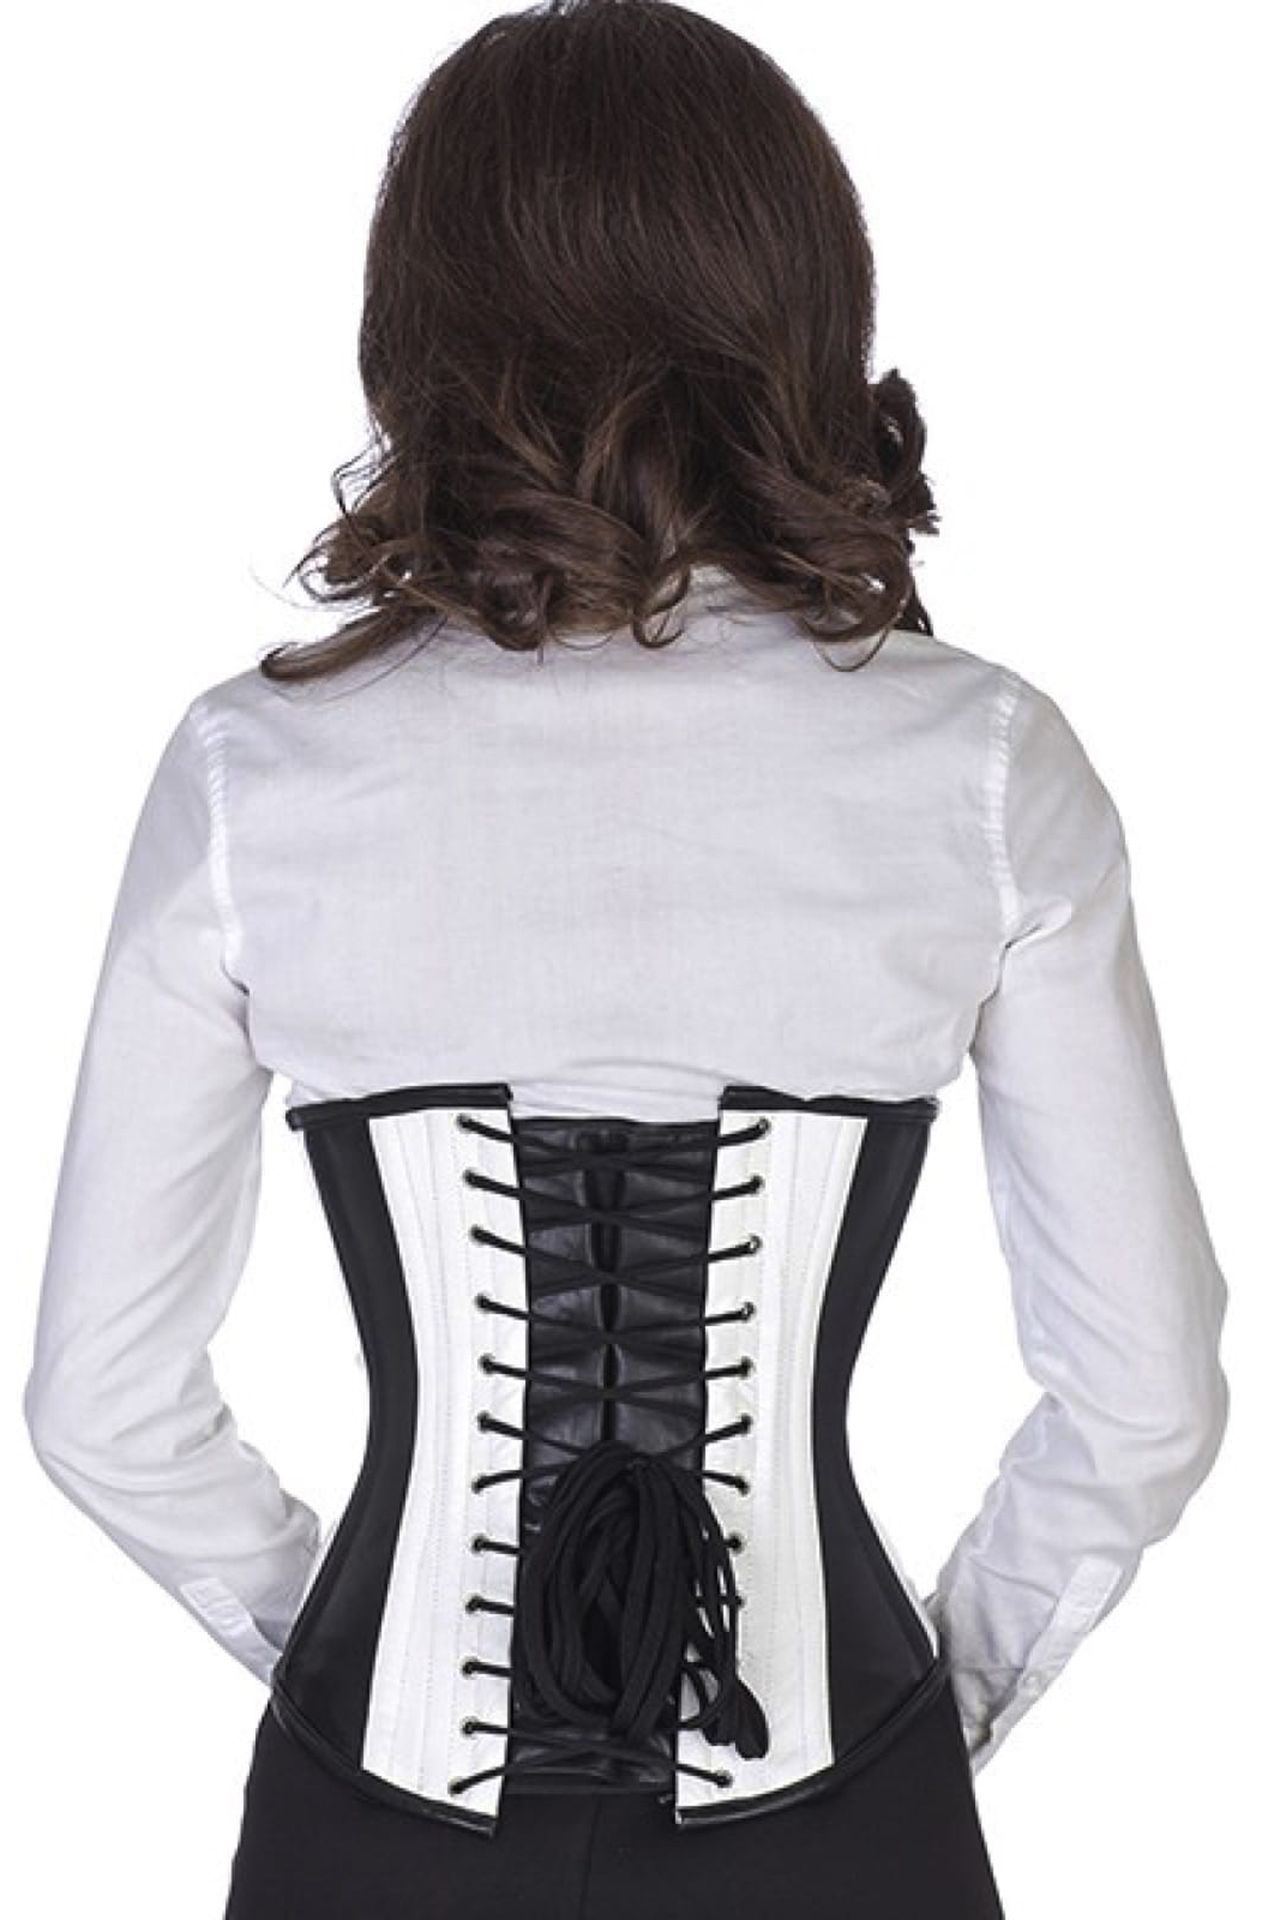 Leren corset zwart wit onderborst Korset lu35